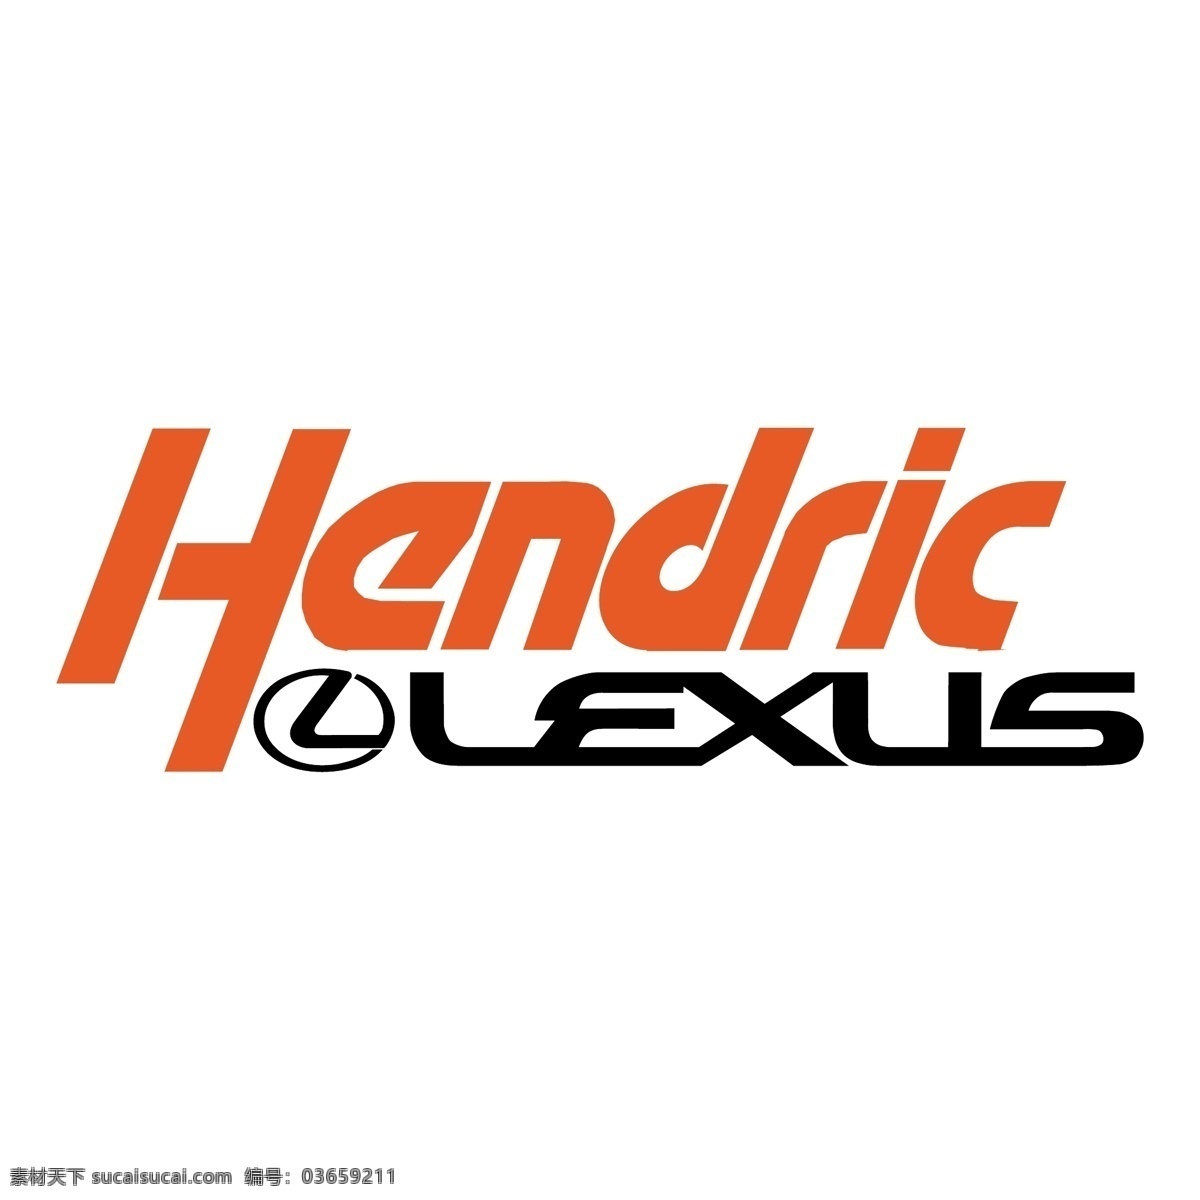 亨德里 克雷克 萨斯 免费 雷克 标志 标识 亨德里克 psd源文件 logo设计